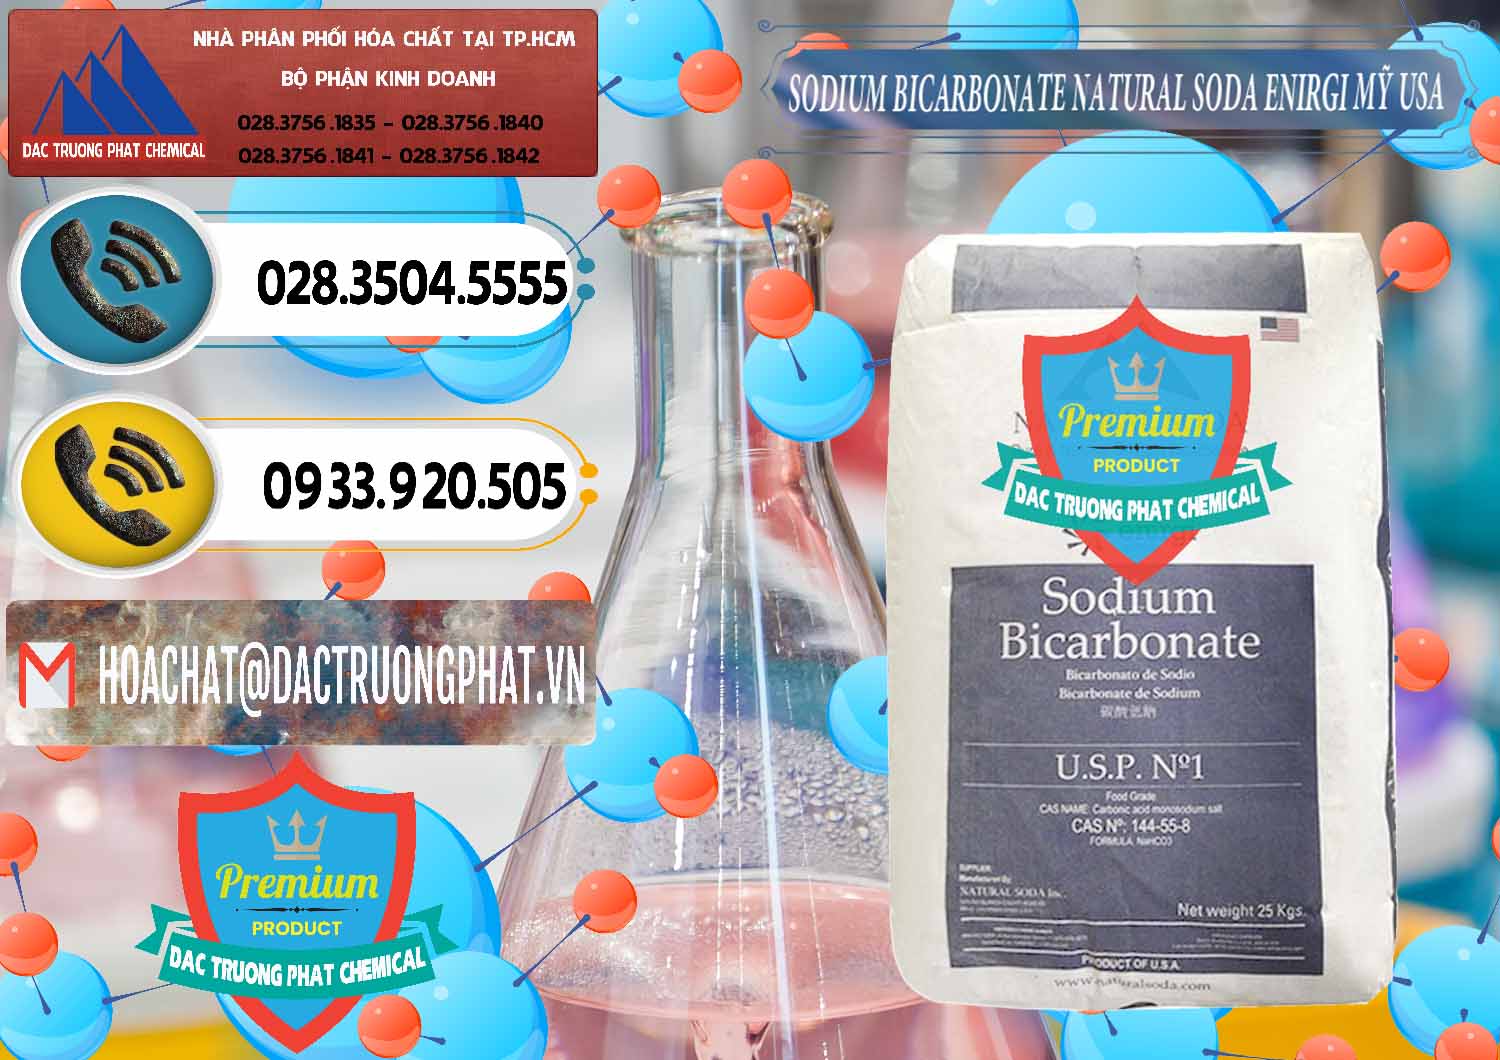 Nơi kinh doanh _ bán Sodium Bicarbonate – Bicar NaHCO3 Food Grade Natural Soda Enirgi Mỹ USA - 0257 - Nhà phân phối - nhập khẩu hóa chất tại TP.HCM - hoachatdetnhuom.vn